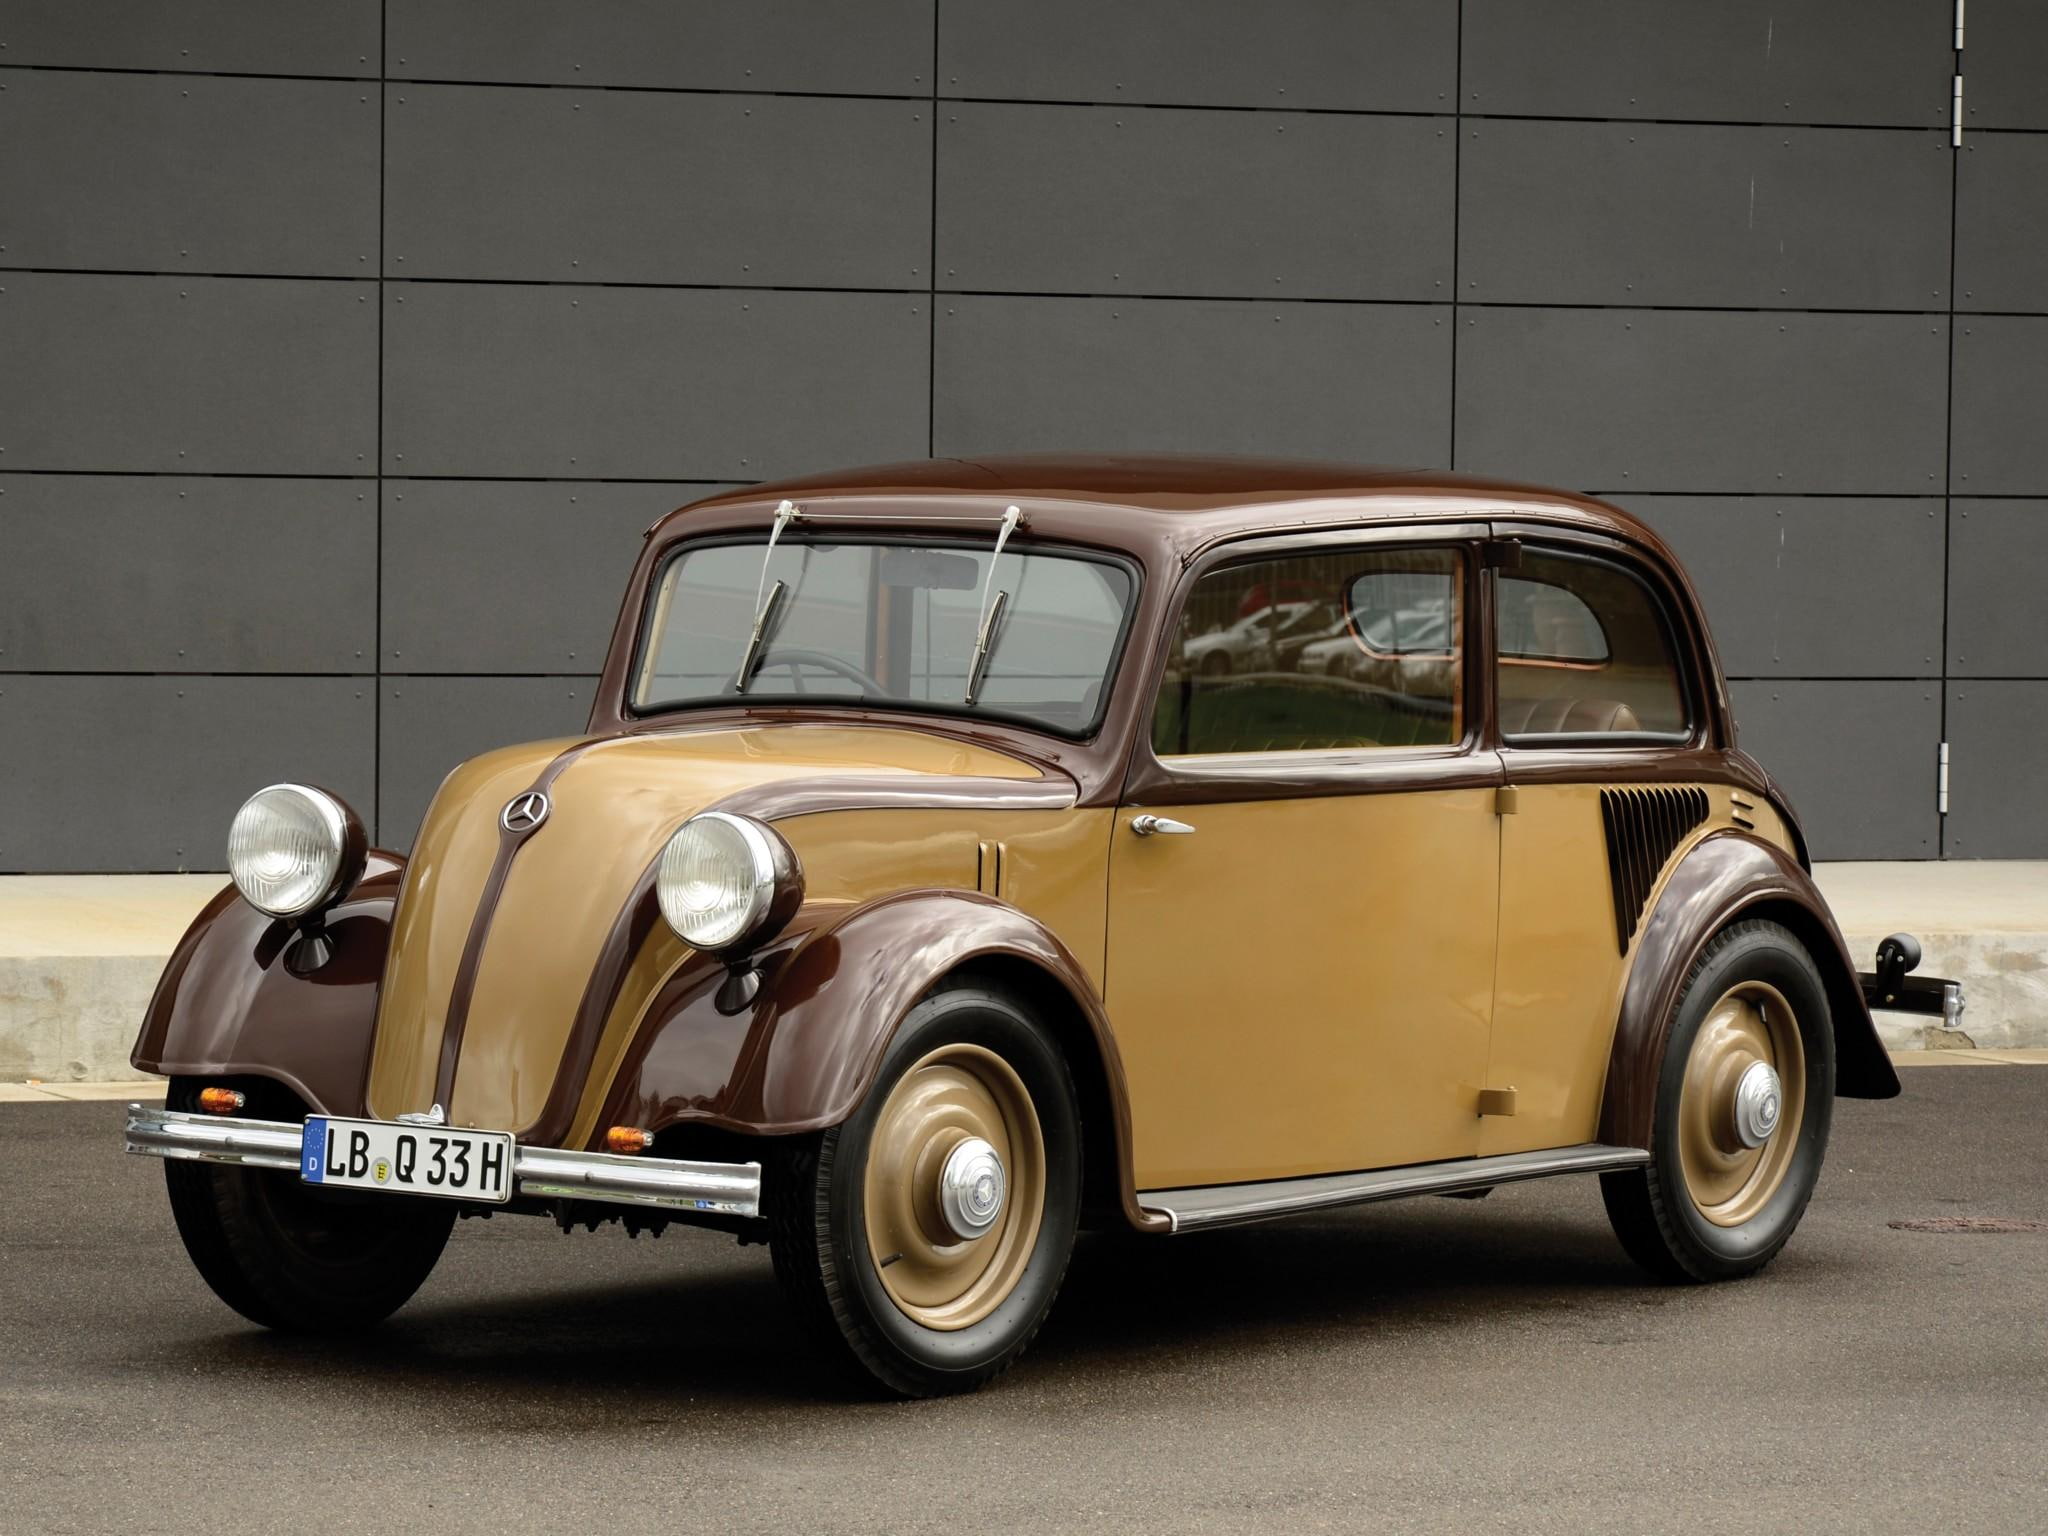 1934 Mercedes Type 130 Limousine, vintage, classic, antique, cars